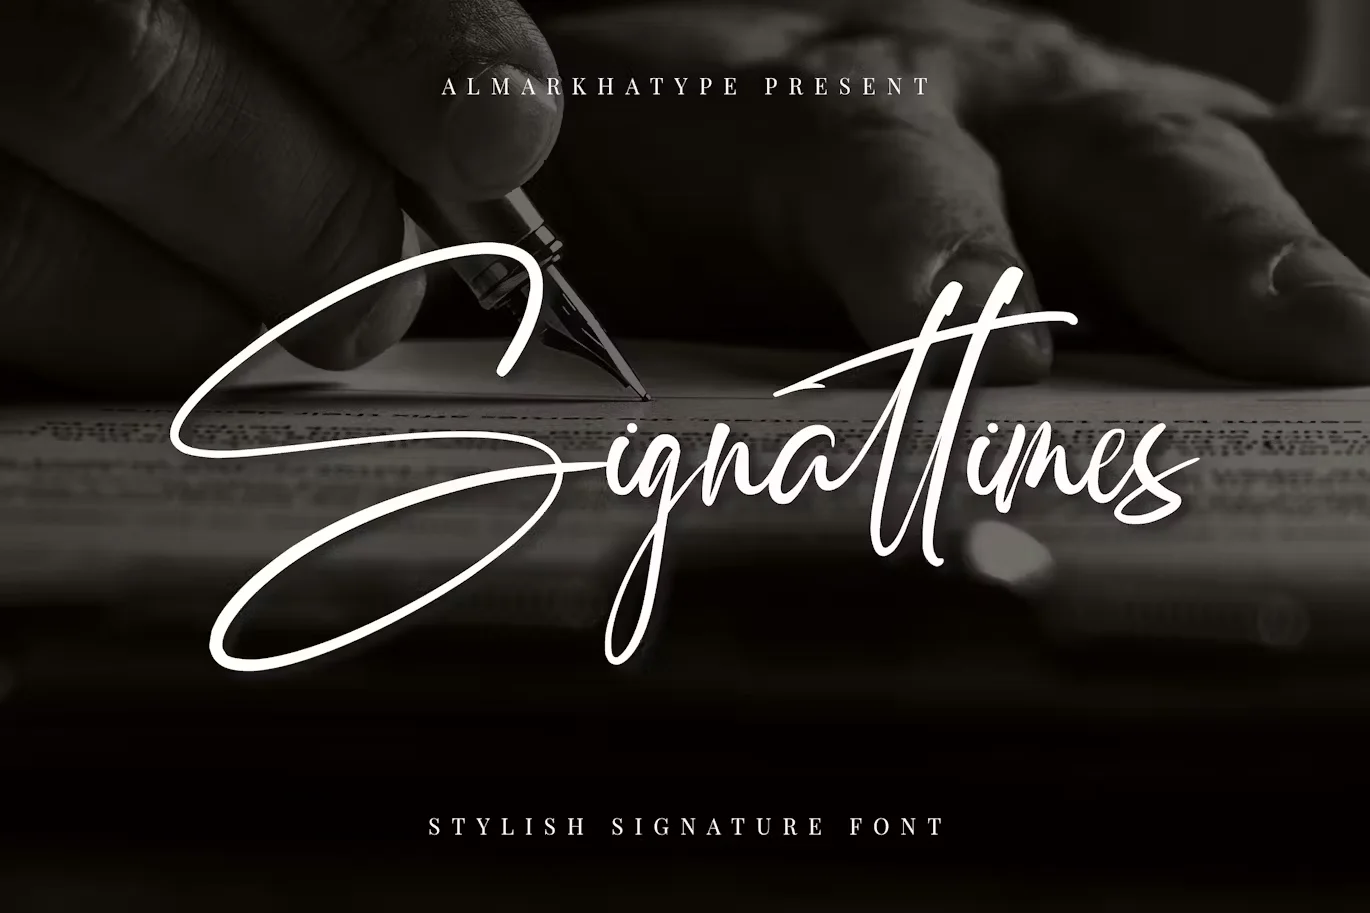 Signattimes - Stylish Signature